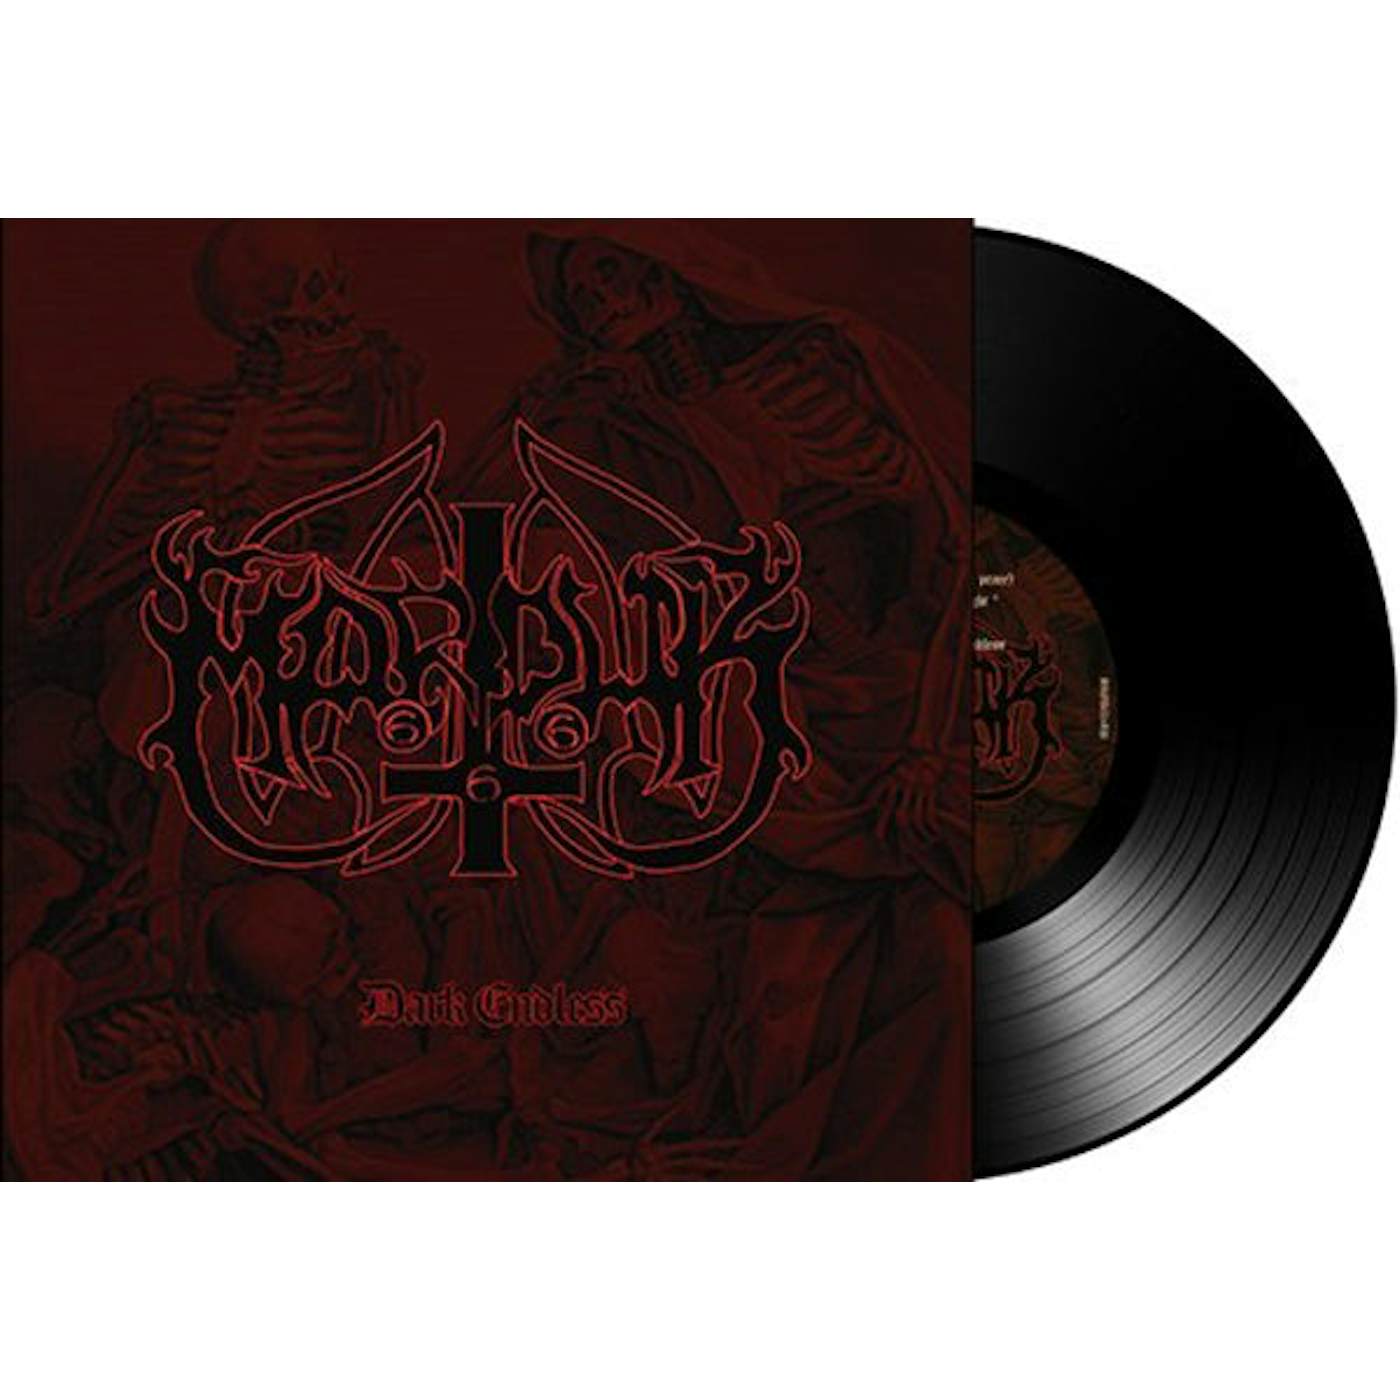 Marduk LP - Dark Endless (Vinyl)